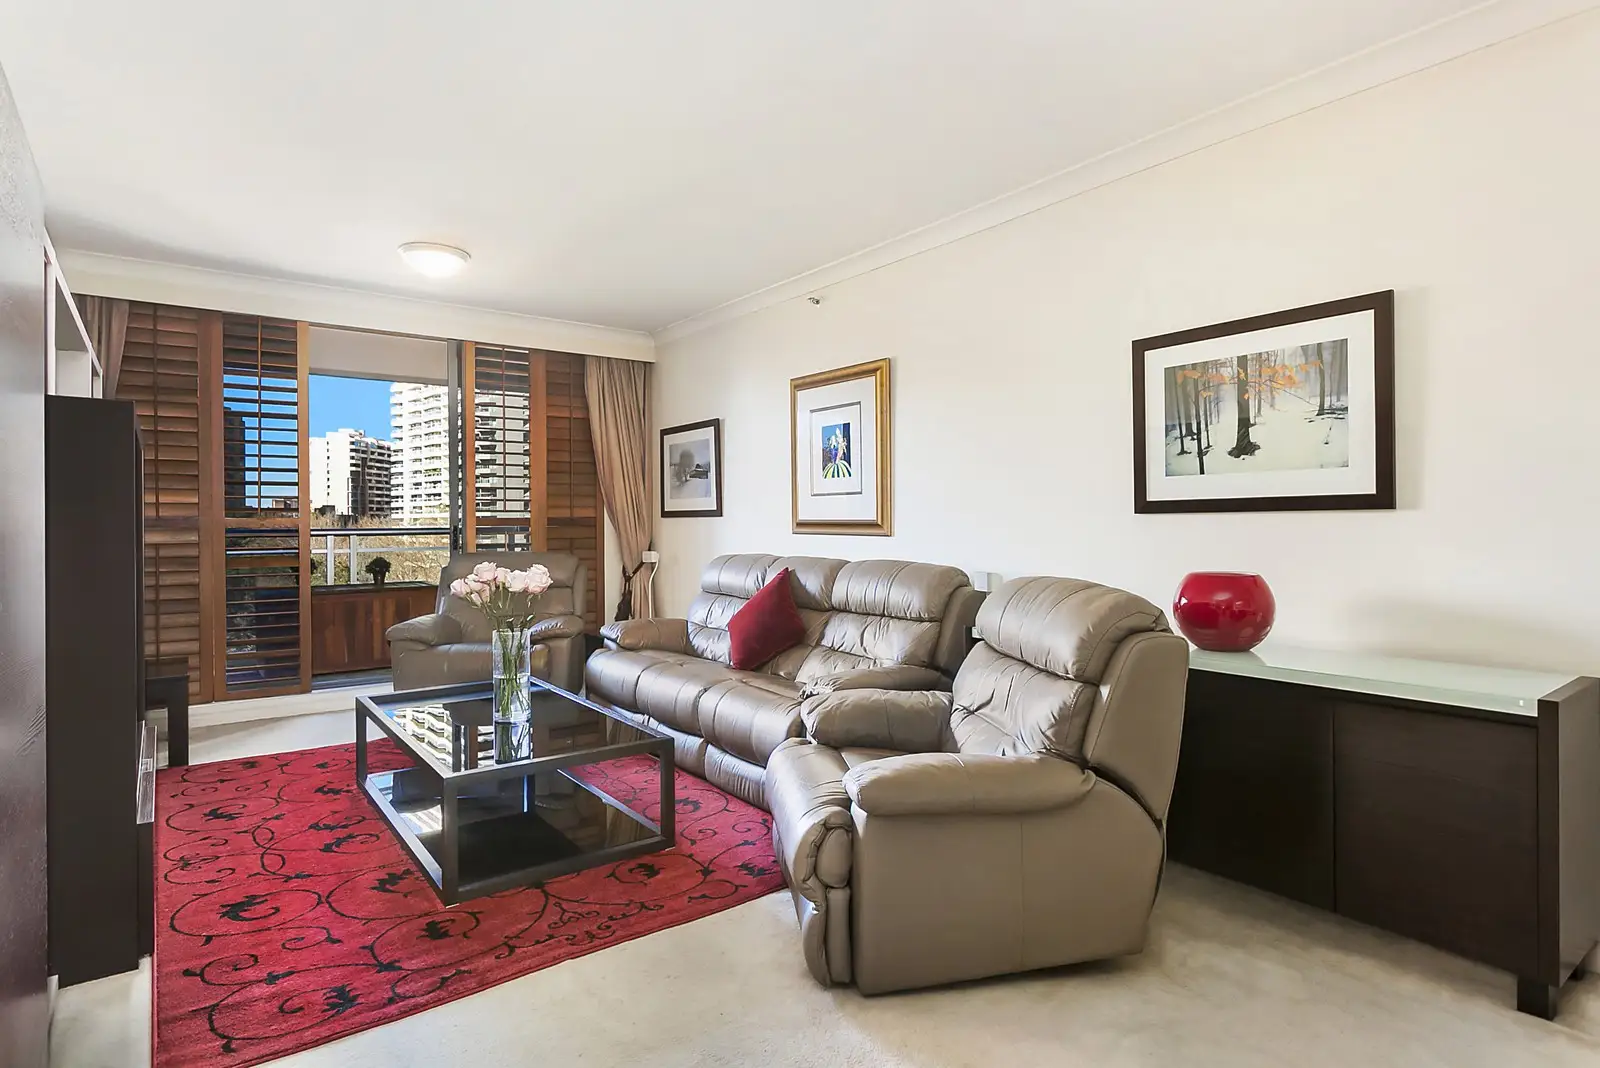 Residence 702, 281 Elizabeth Street 'Regency Hyde Park', Sydney Sold by Sydney Sotheby's International Realty - image 3